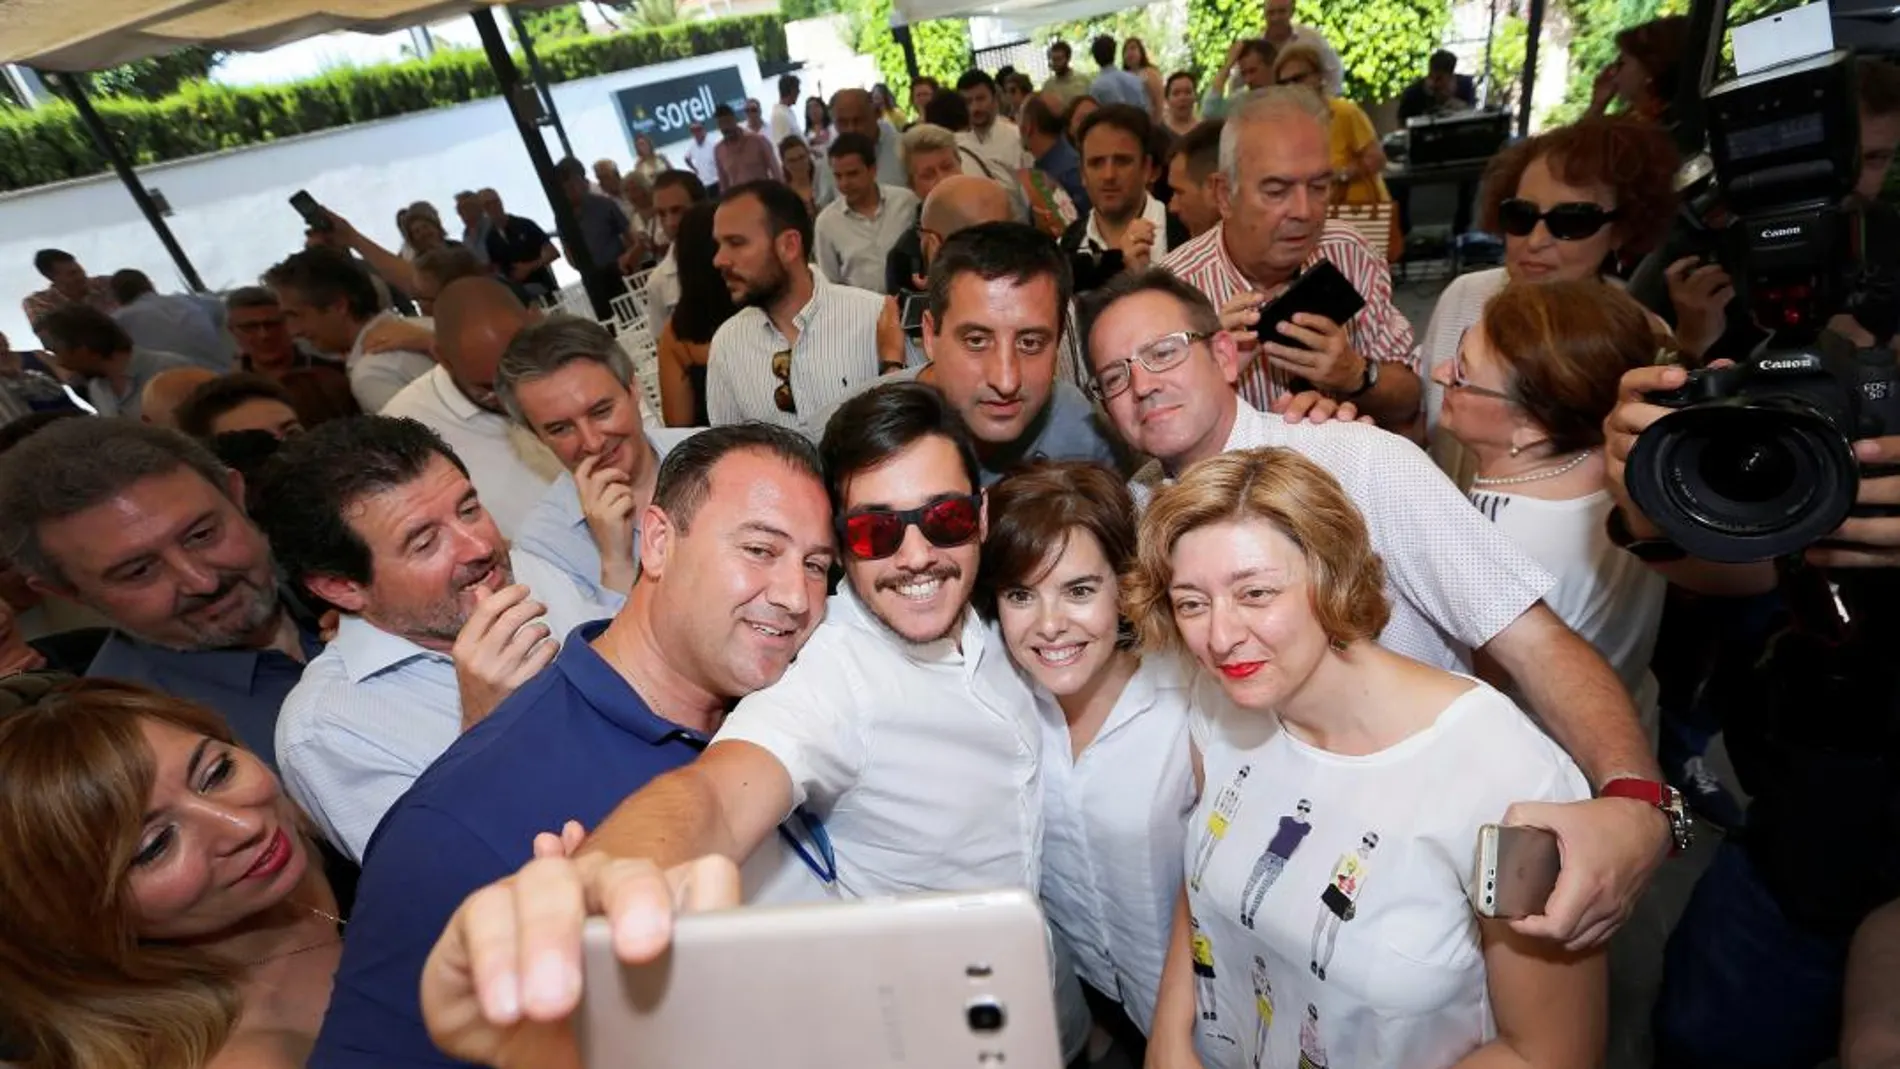 La candidata a la presidencia del PP Soraya Sáenz de Santamaría posa con varios simpatizantes durante un acto con militantes del partido ayer en Alicante, donde estuvo acompañada por Pepe Císcar. Manuel Lorenzo